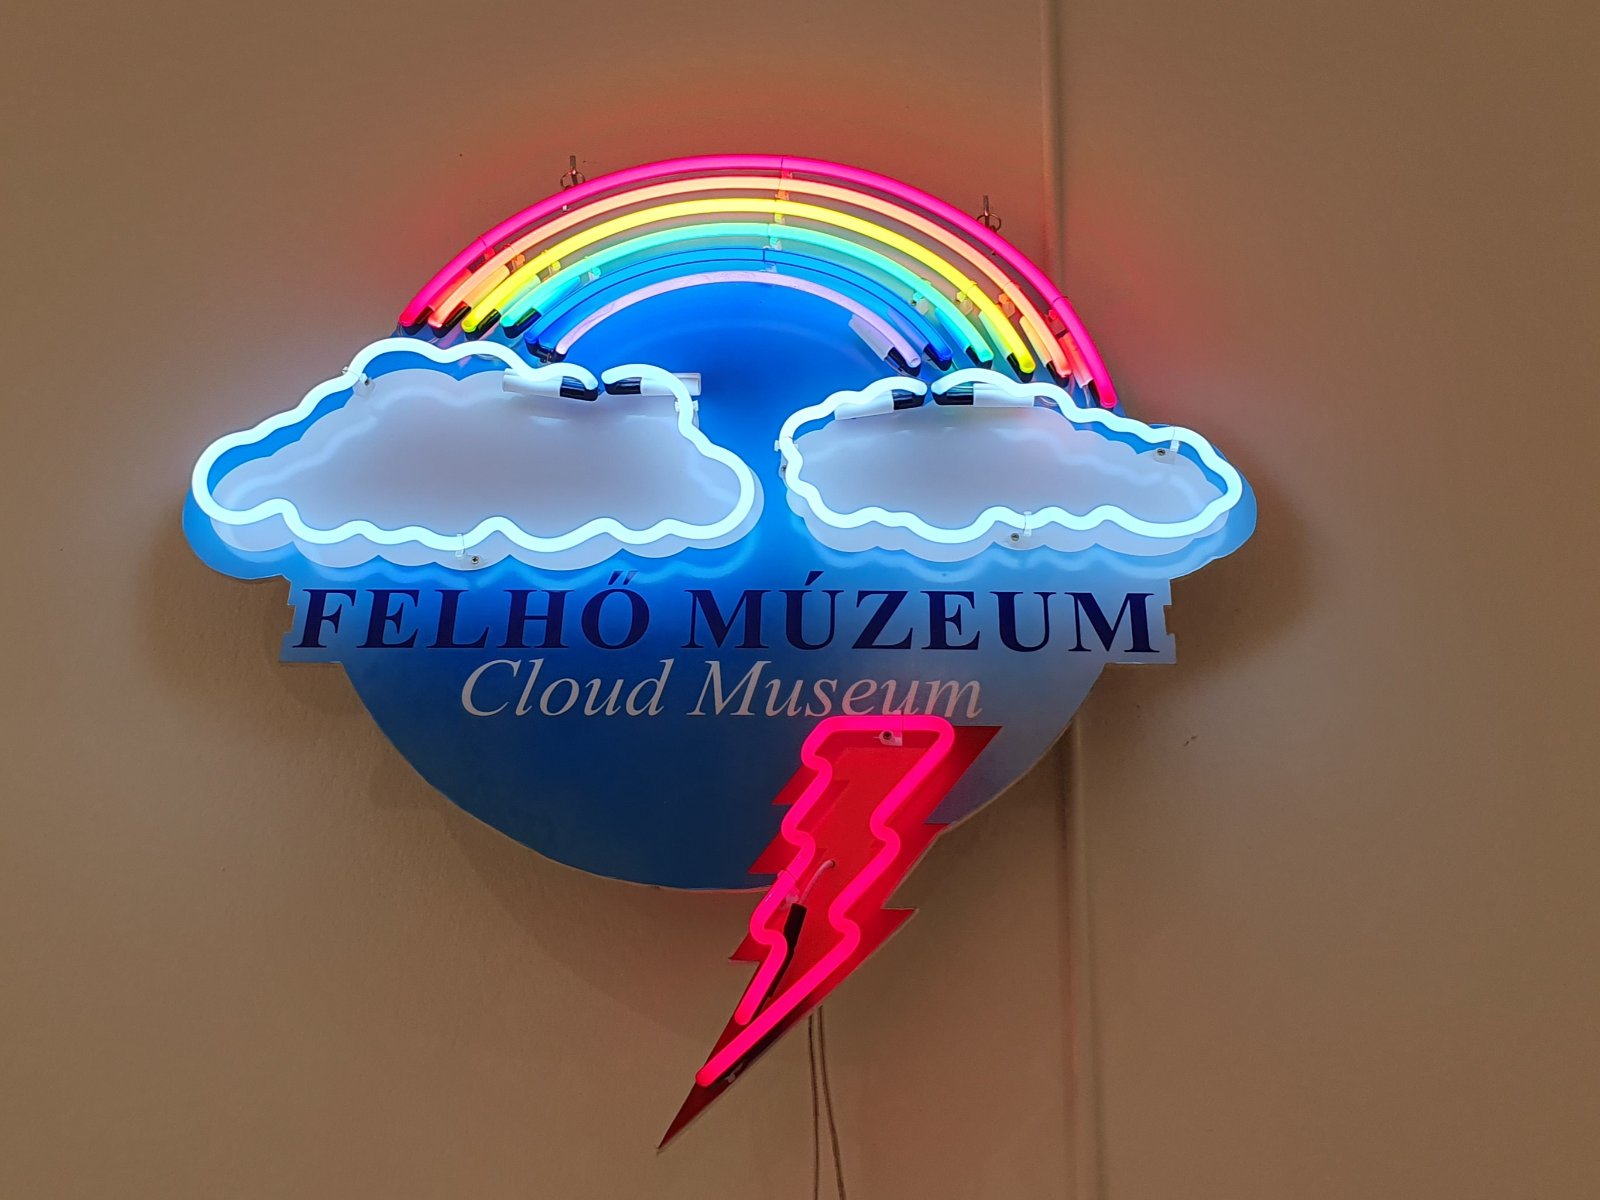 Cukiság és felhőmúzeum – ilyen kiállítások várnak idén a Ludwig Múzeumban